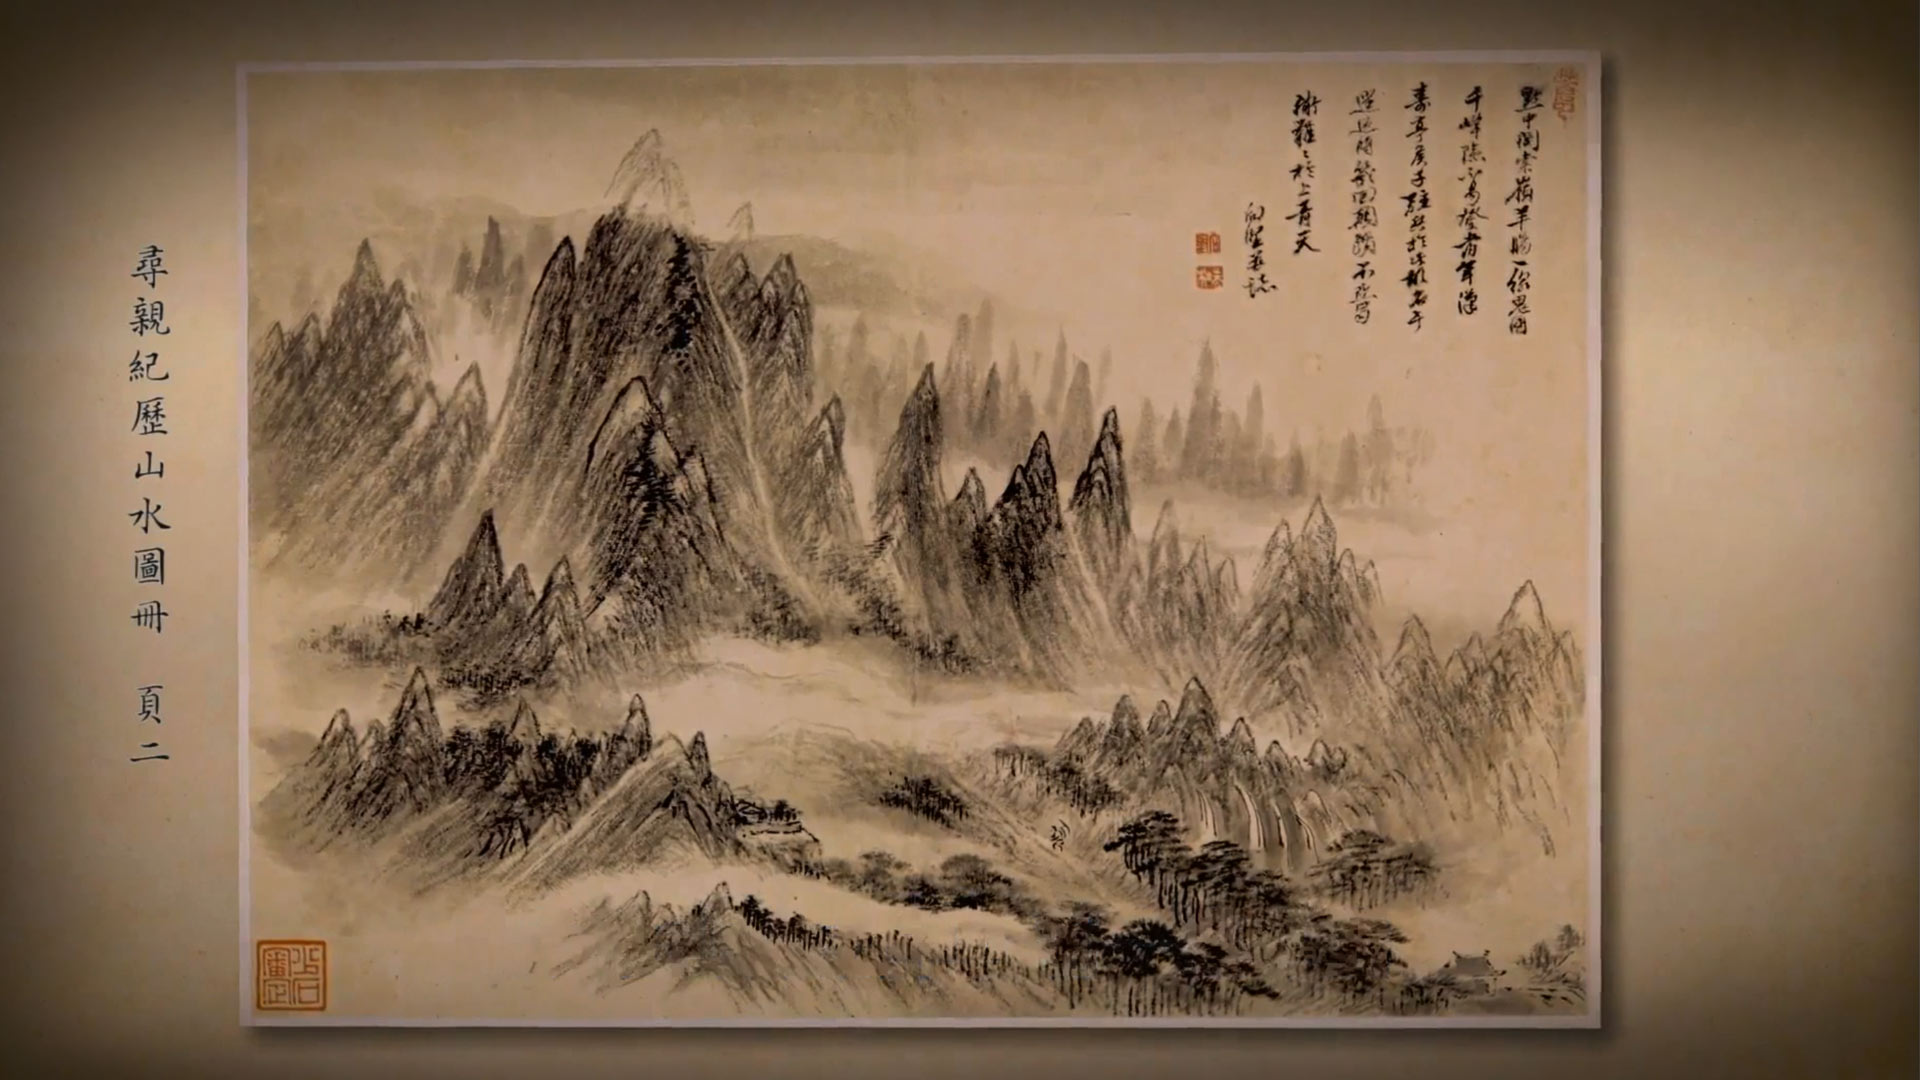 出处:《呼吸美学－中国古画赏析》: 万水千山总是情(2021年)